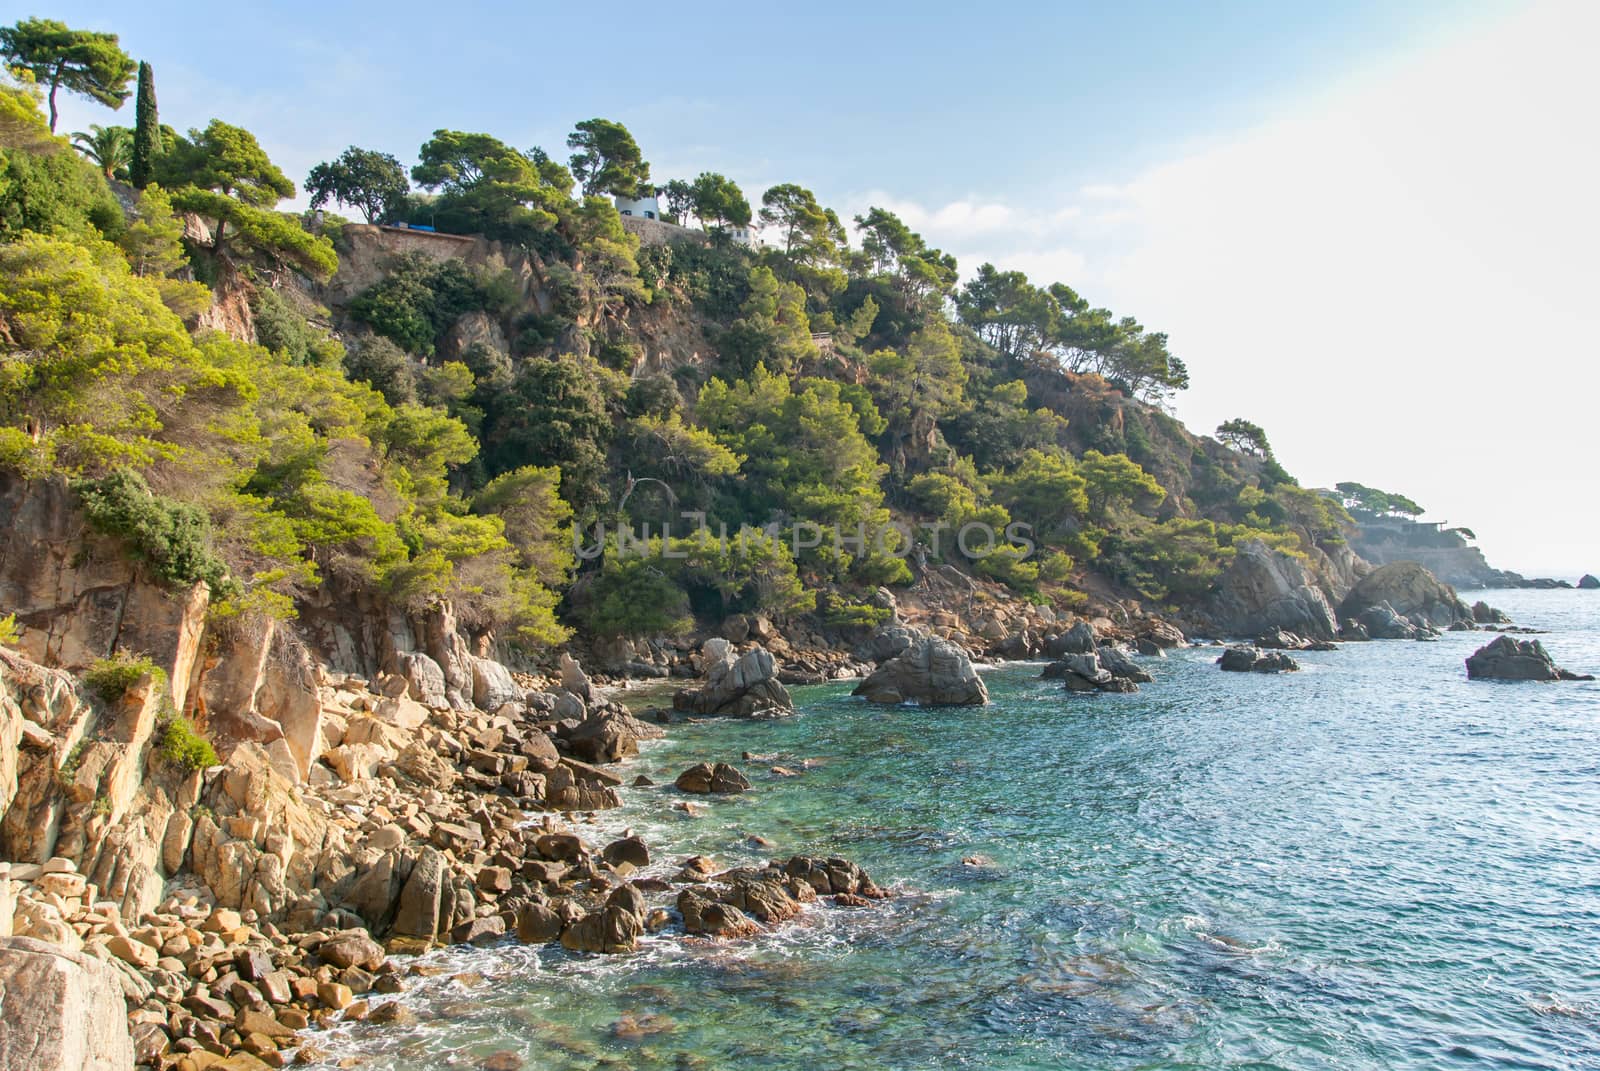 Platja Fenals Fanals Beach in Lloret de Mar at Costa Brava of Catalonia Girona Spain